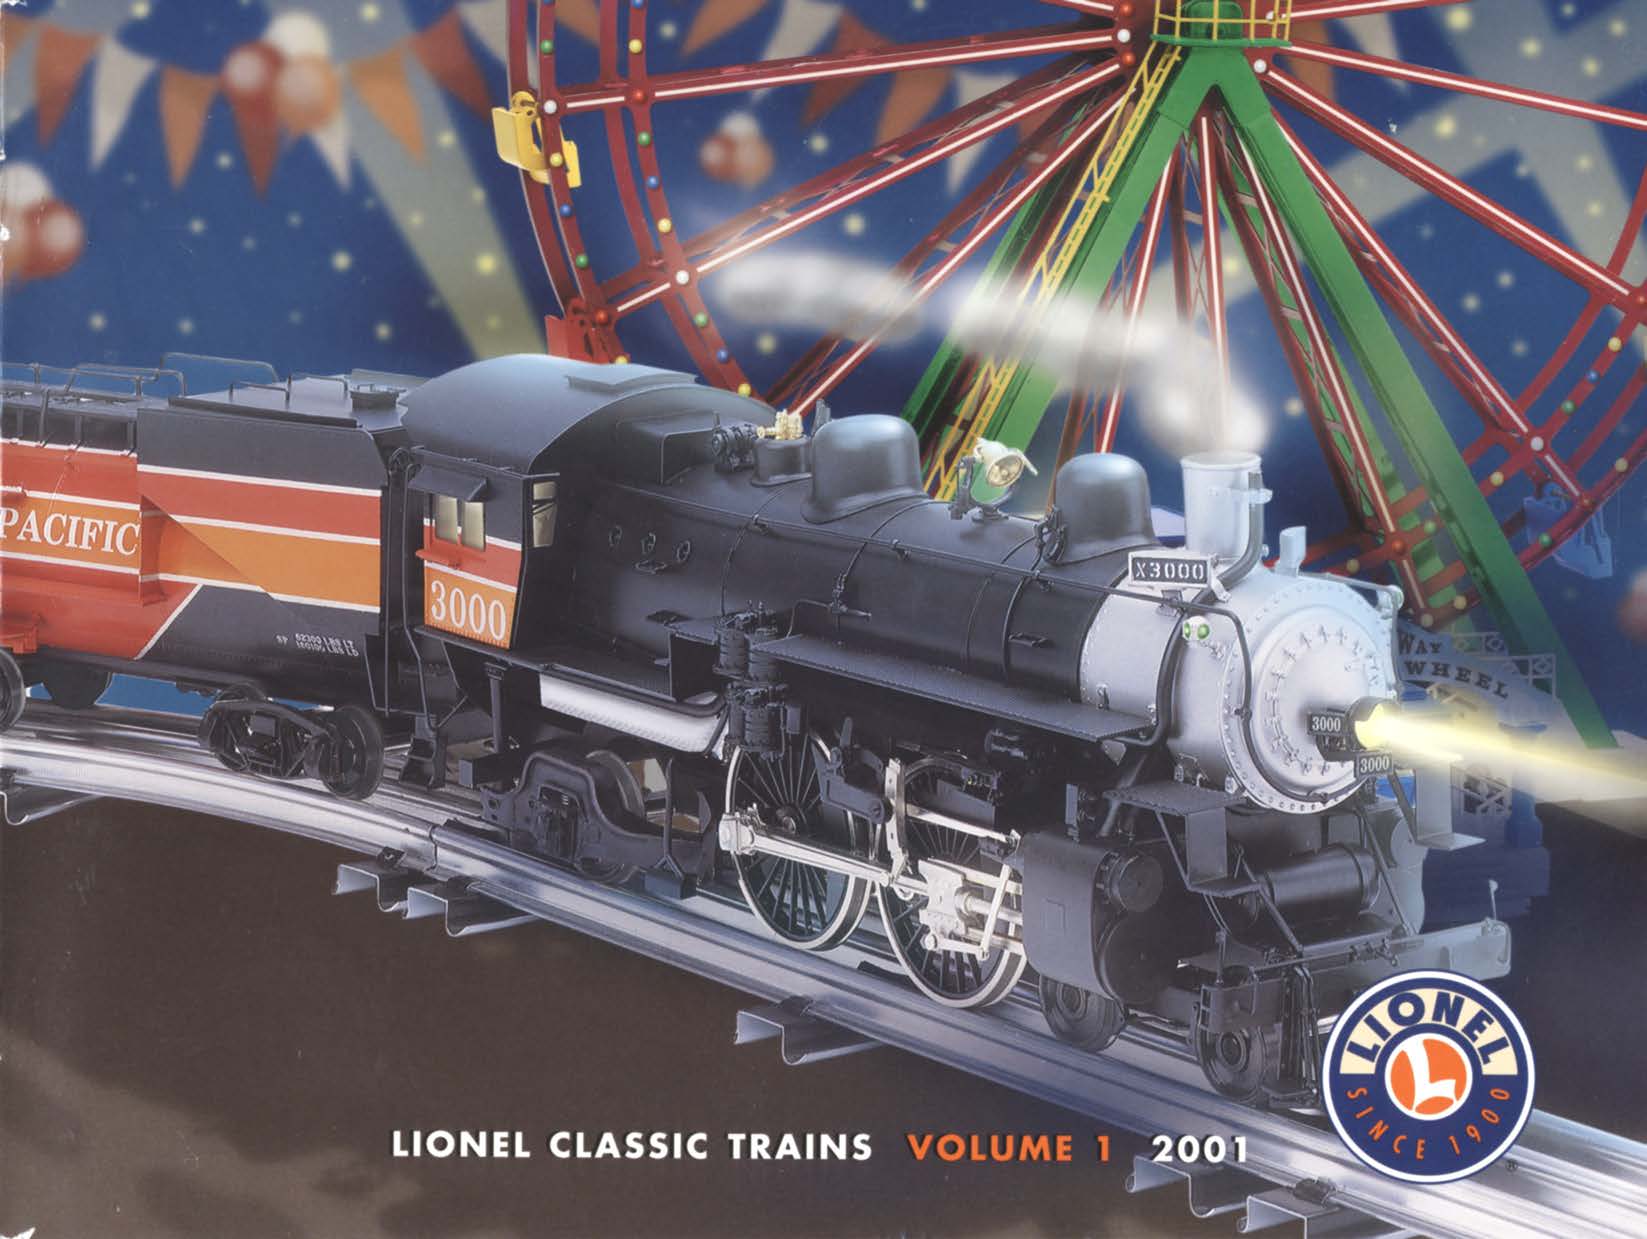 2001 Lionel Volume 1